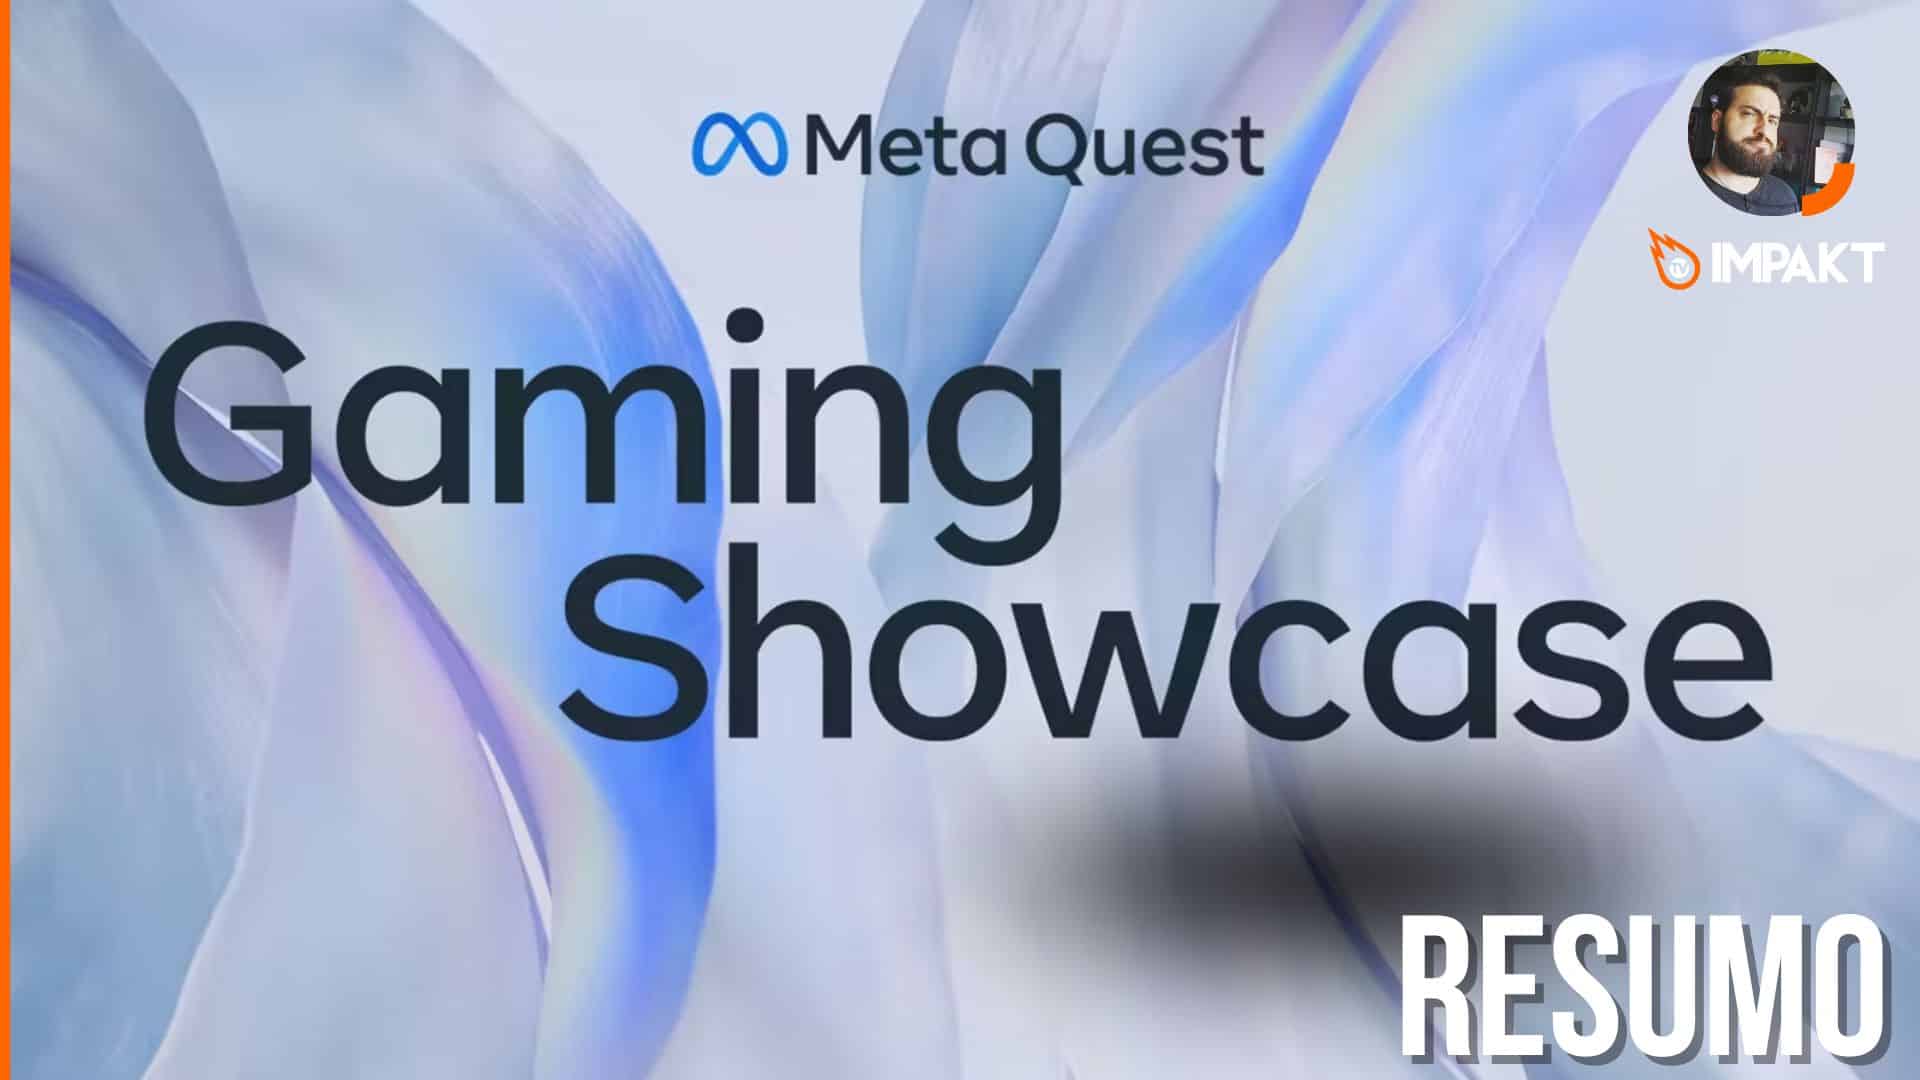 Resumo Meta Quest Games Showcase